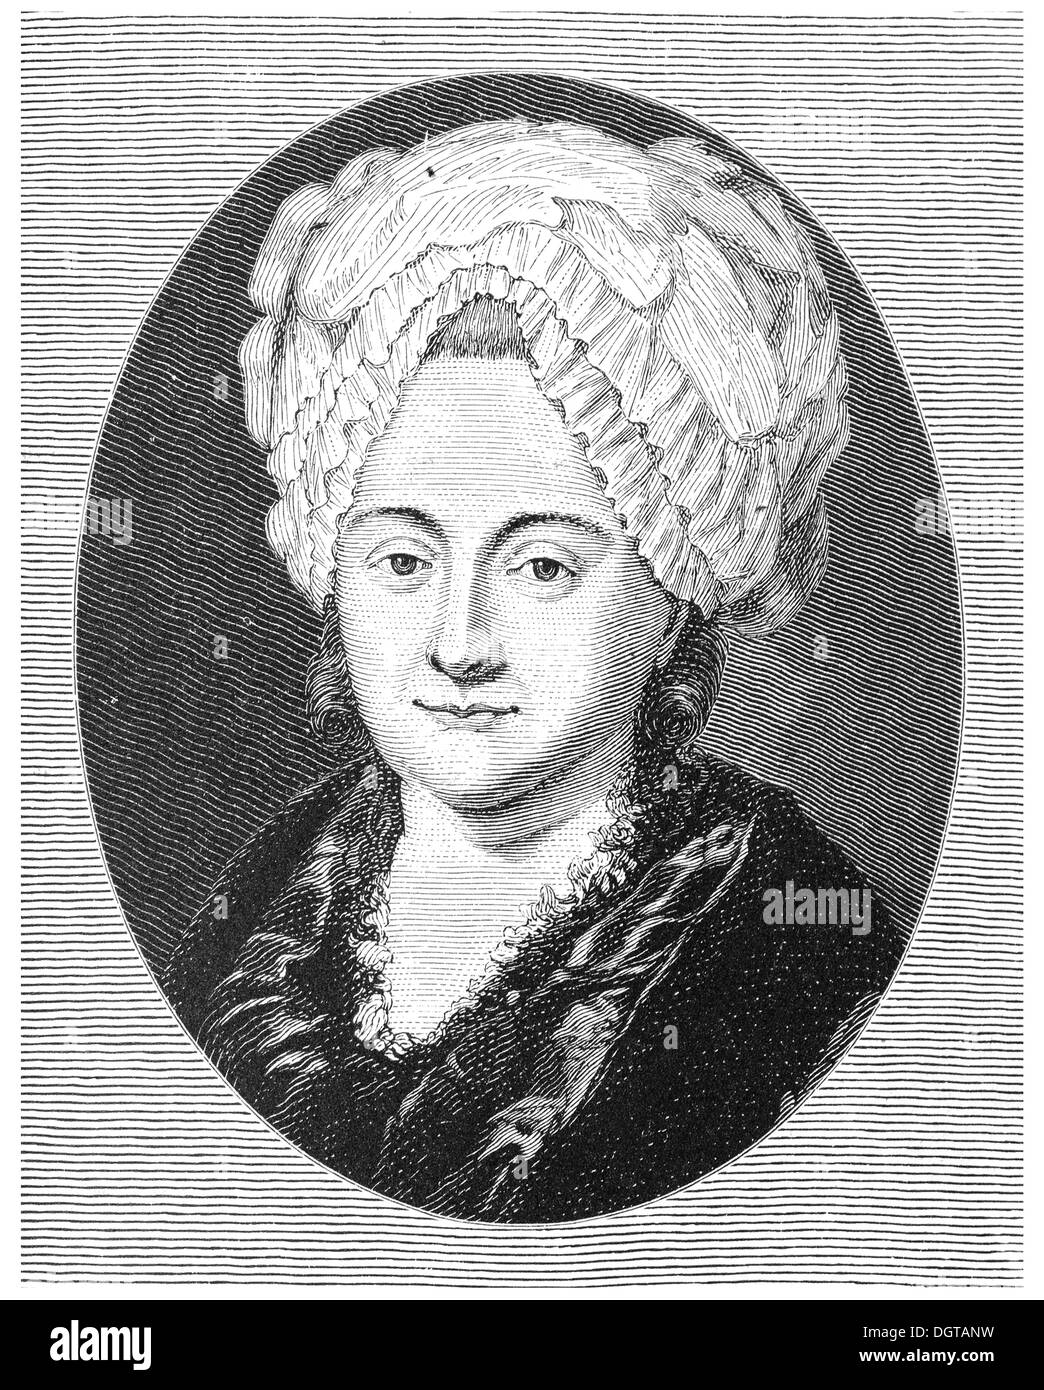 Frau Rat, Goethe's mother, historical illustration in Deutsche Literaturgeschichte or German literature from 1885 Stock Photo